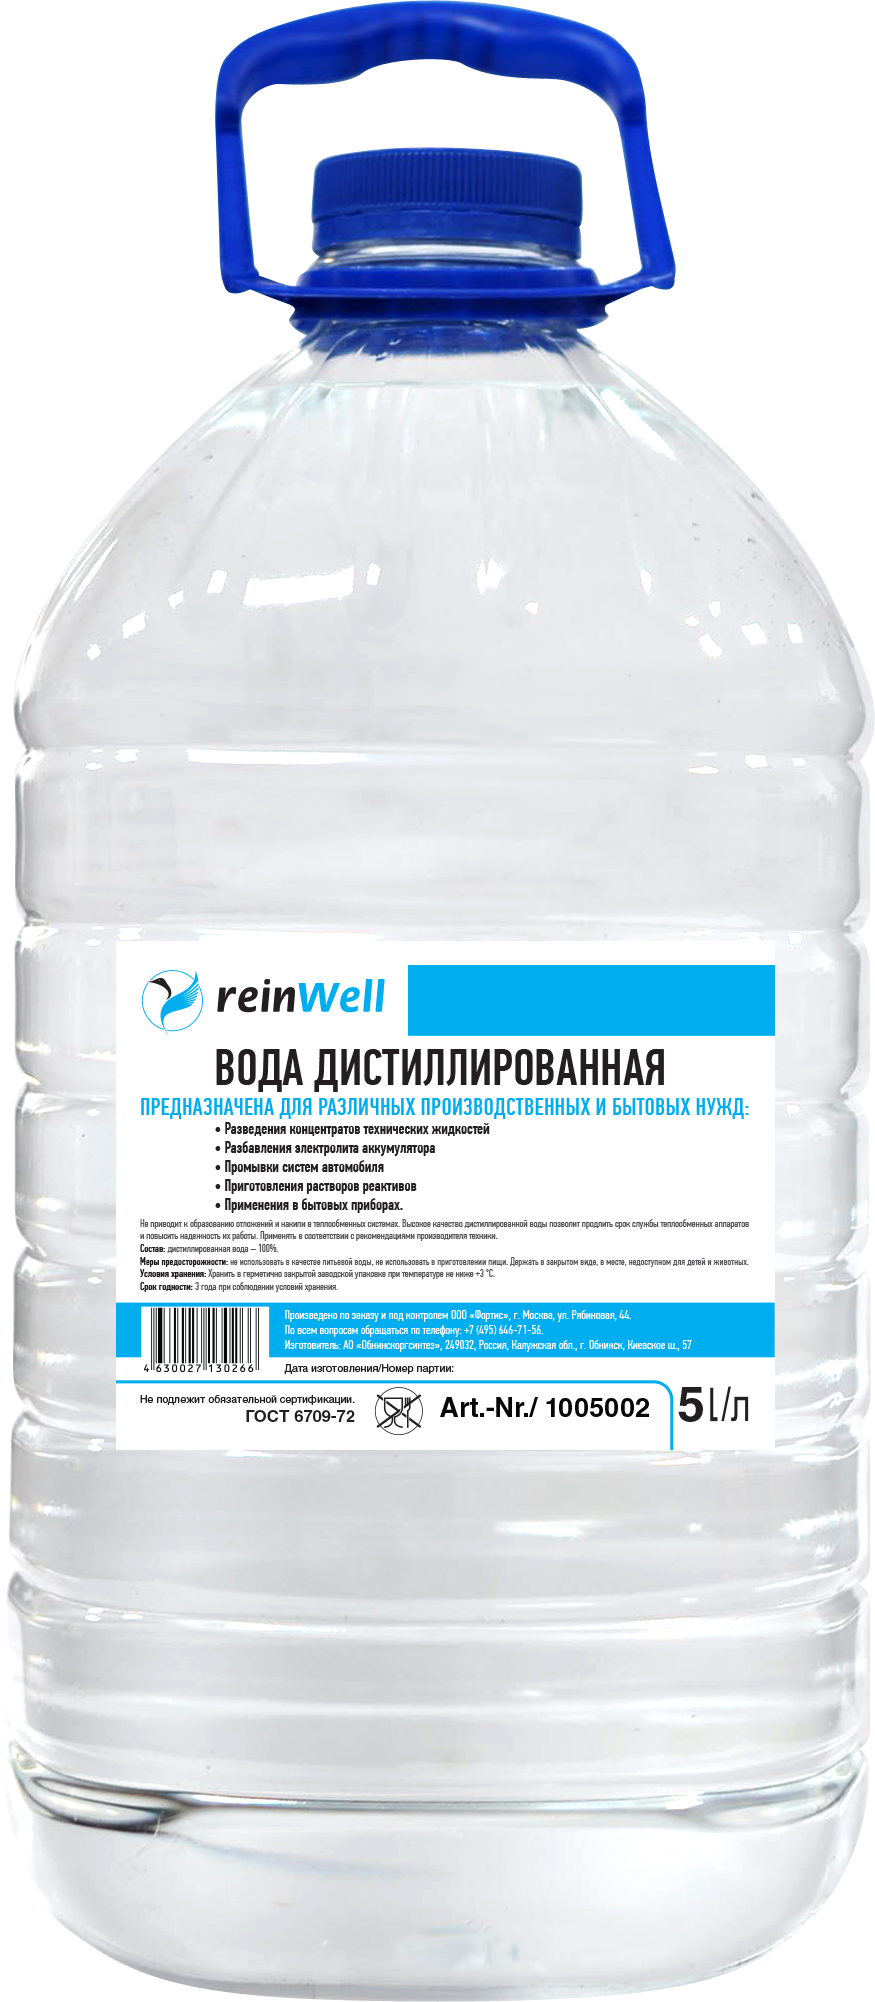 Вода дистиллированная REINWELL RW-02 4.8 кг (5 л). Дистиллированная вода REINWELL RW-02. Вода дистиллированная (1,5л) socralin. Дистиллированная вода (Сант-сервис) 5 л (4шт).